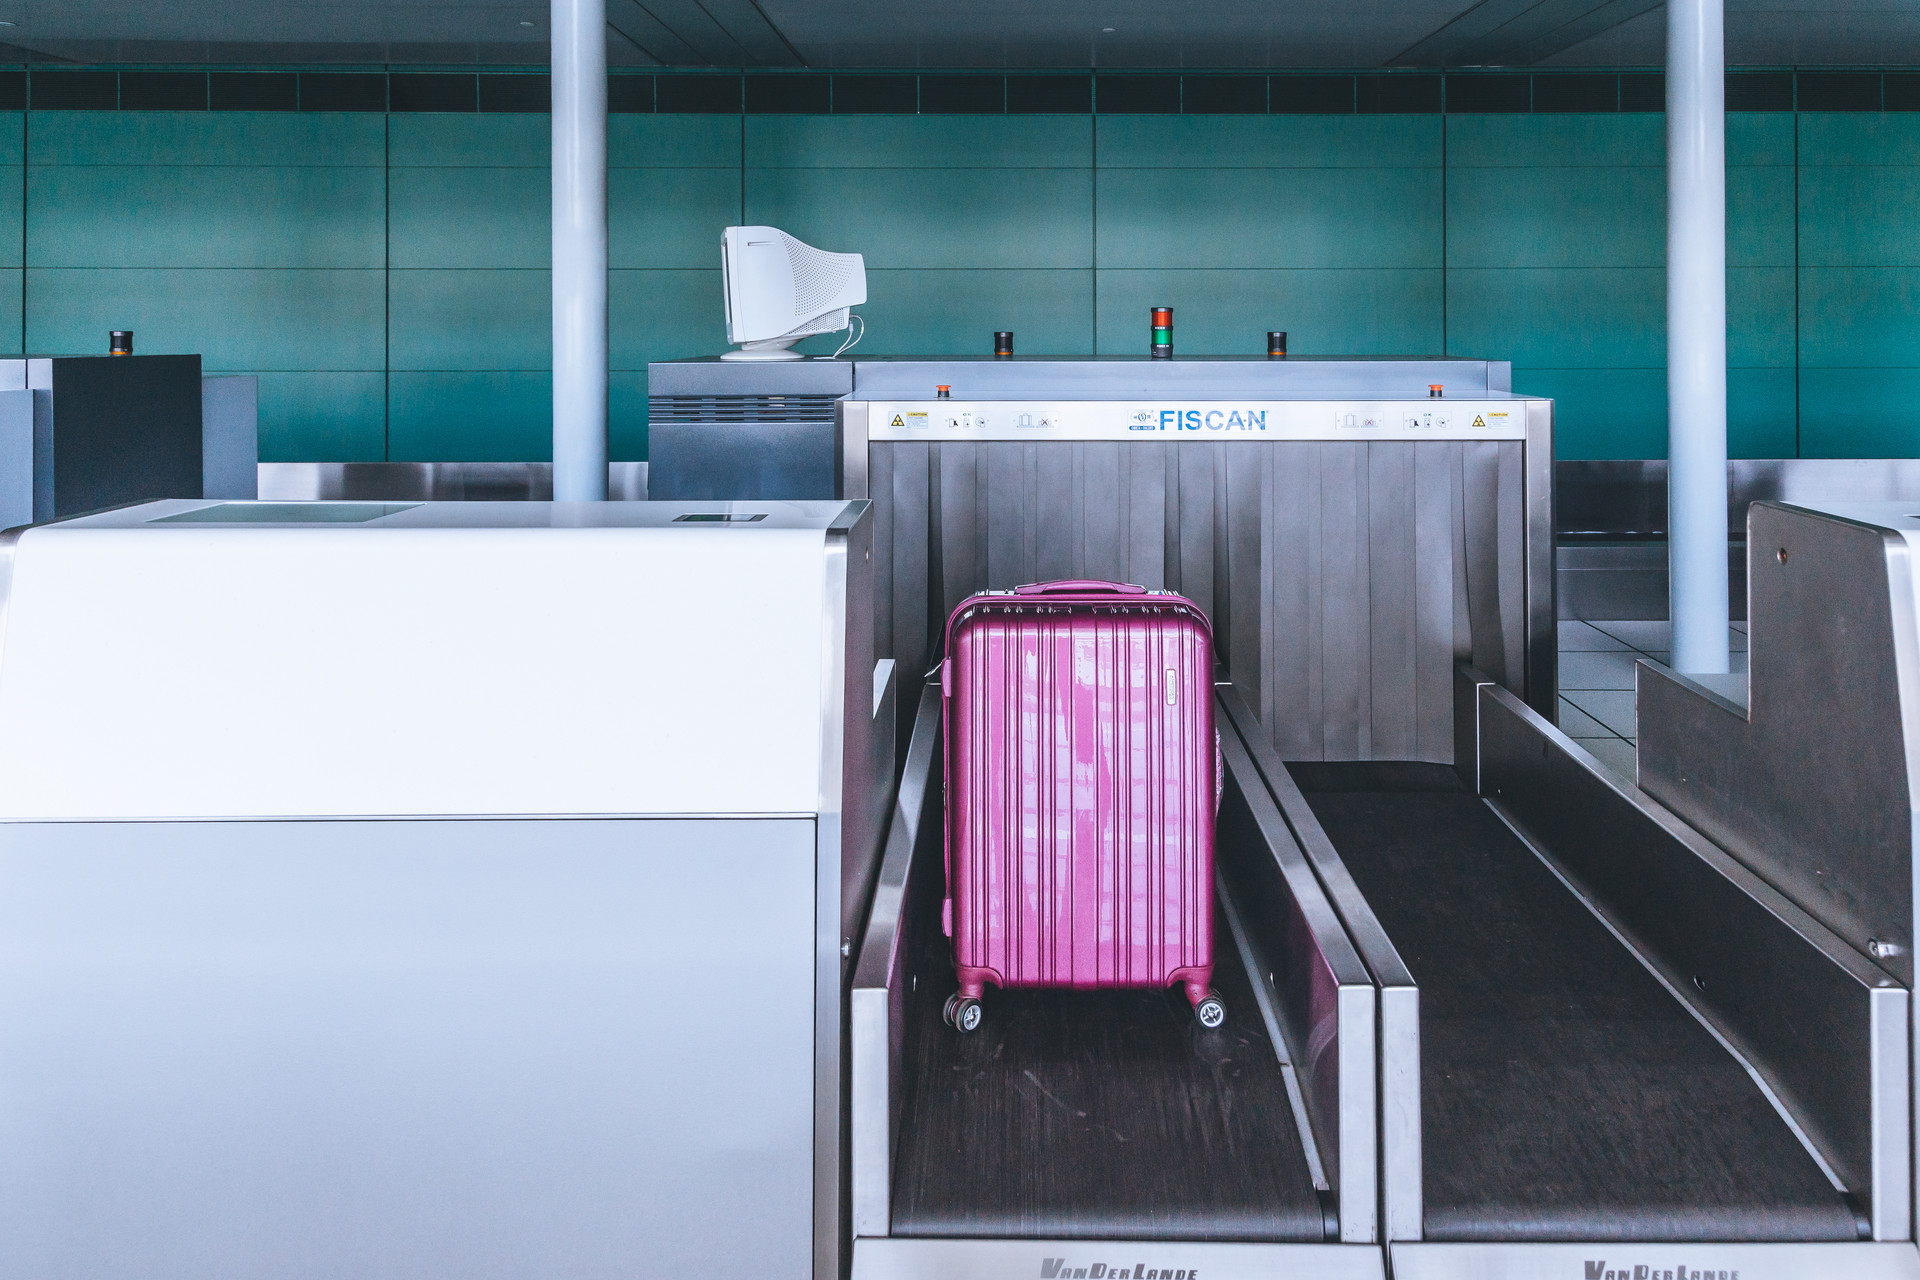 国内航司推电子行李牌 全程追踪行李背后成本高昂